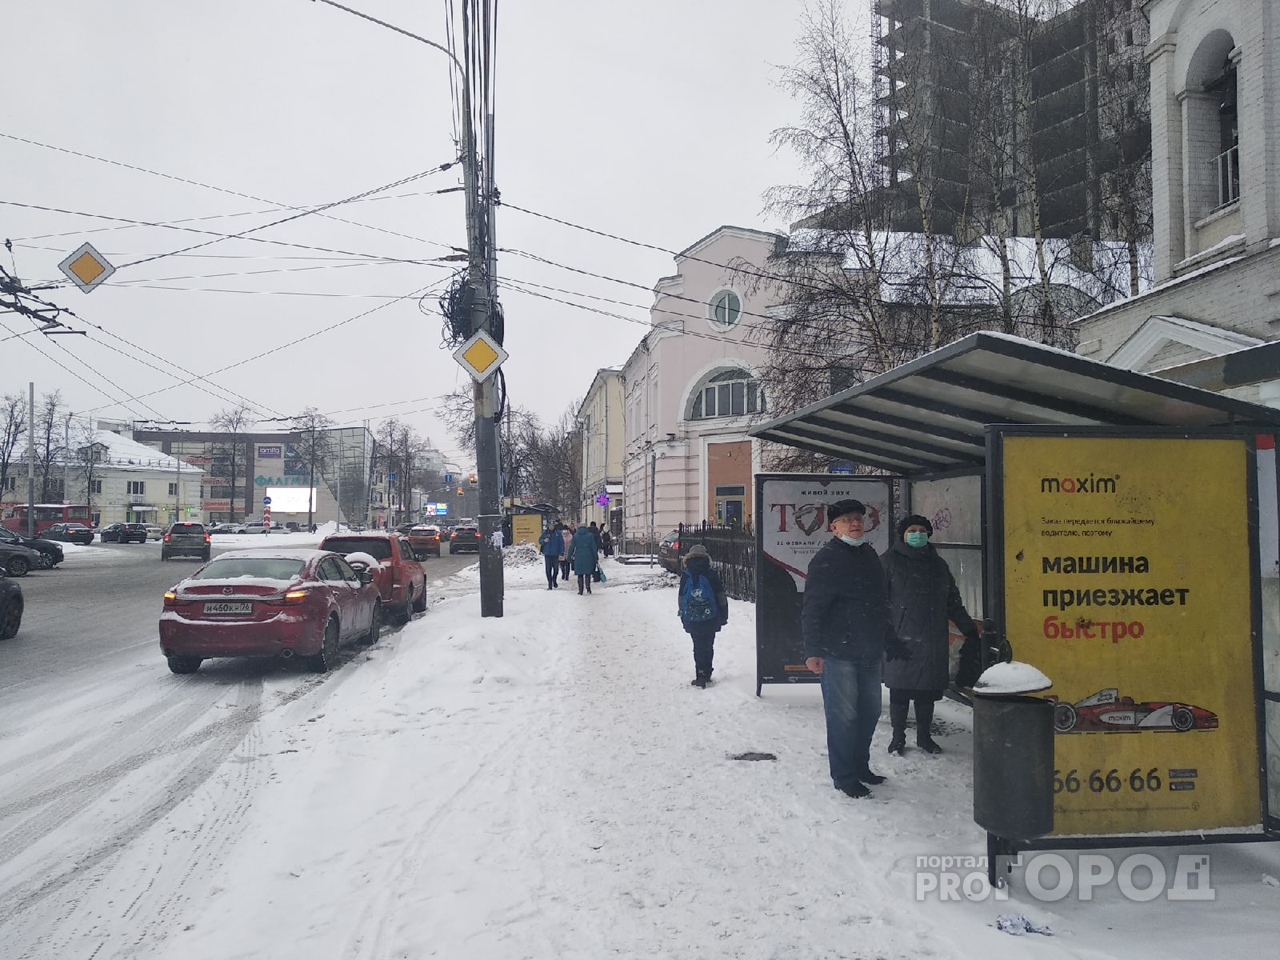 Власти "накрыли" его: какой автобус ярославцам приходится ждать всех дольше